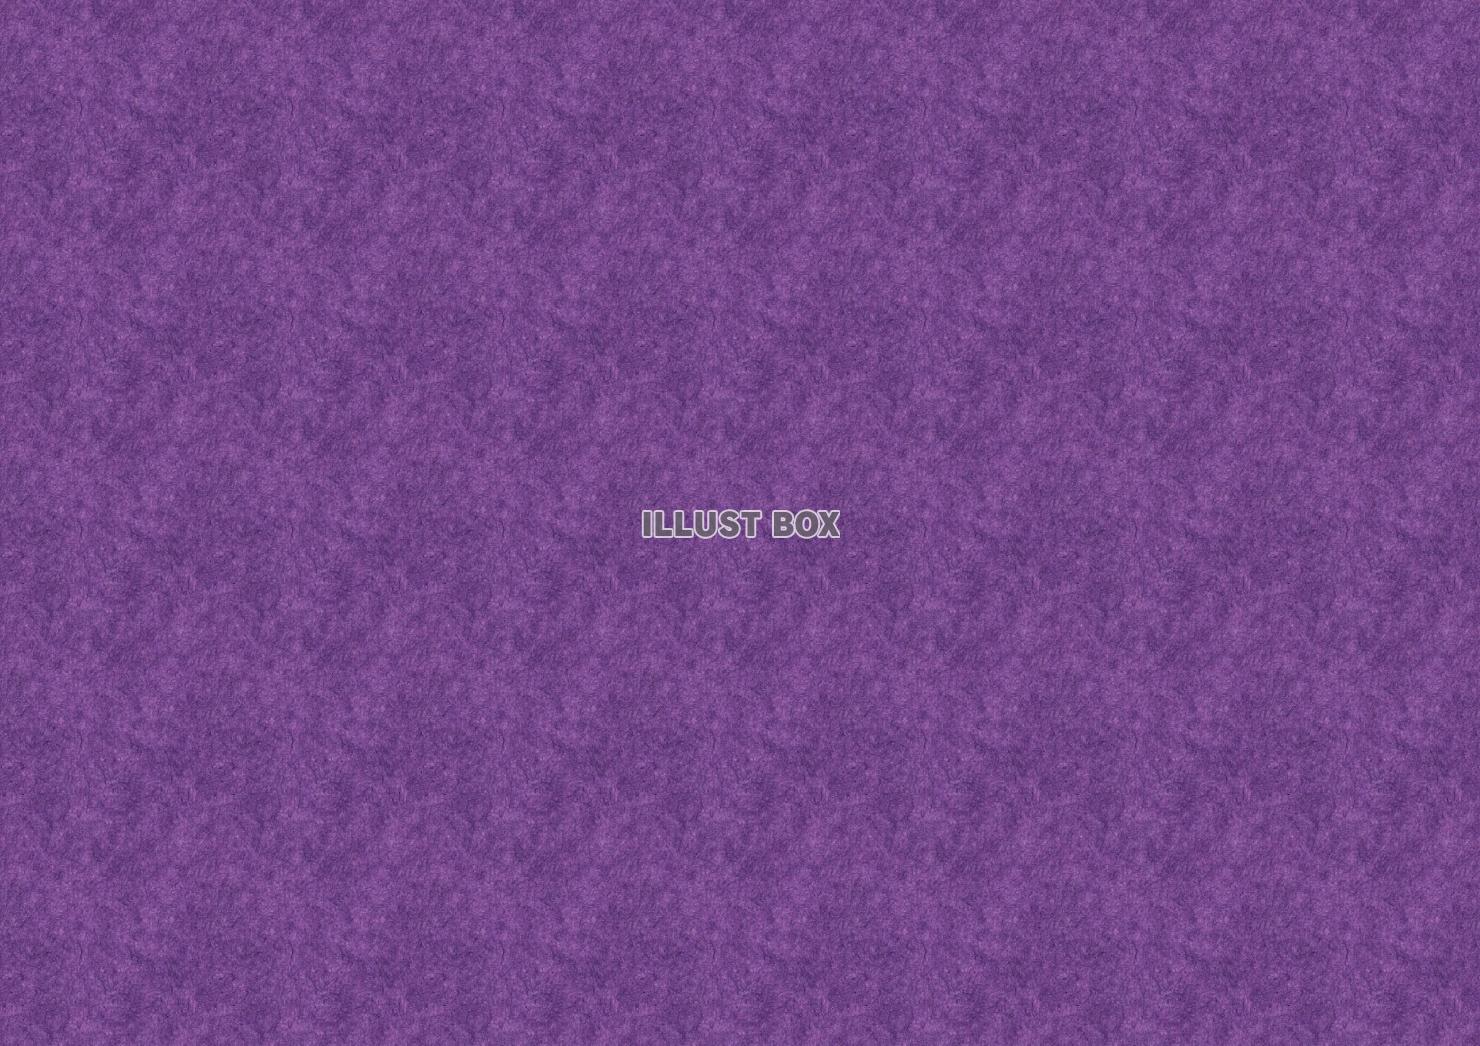 クラフト紙ダーク（紫）